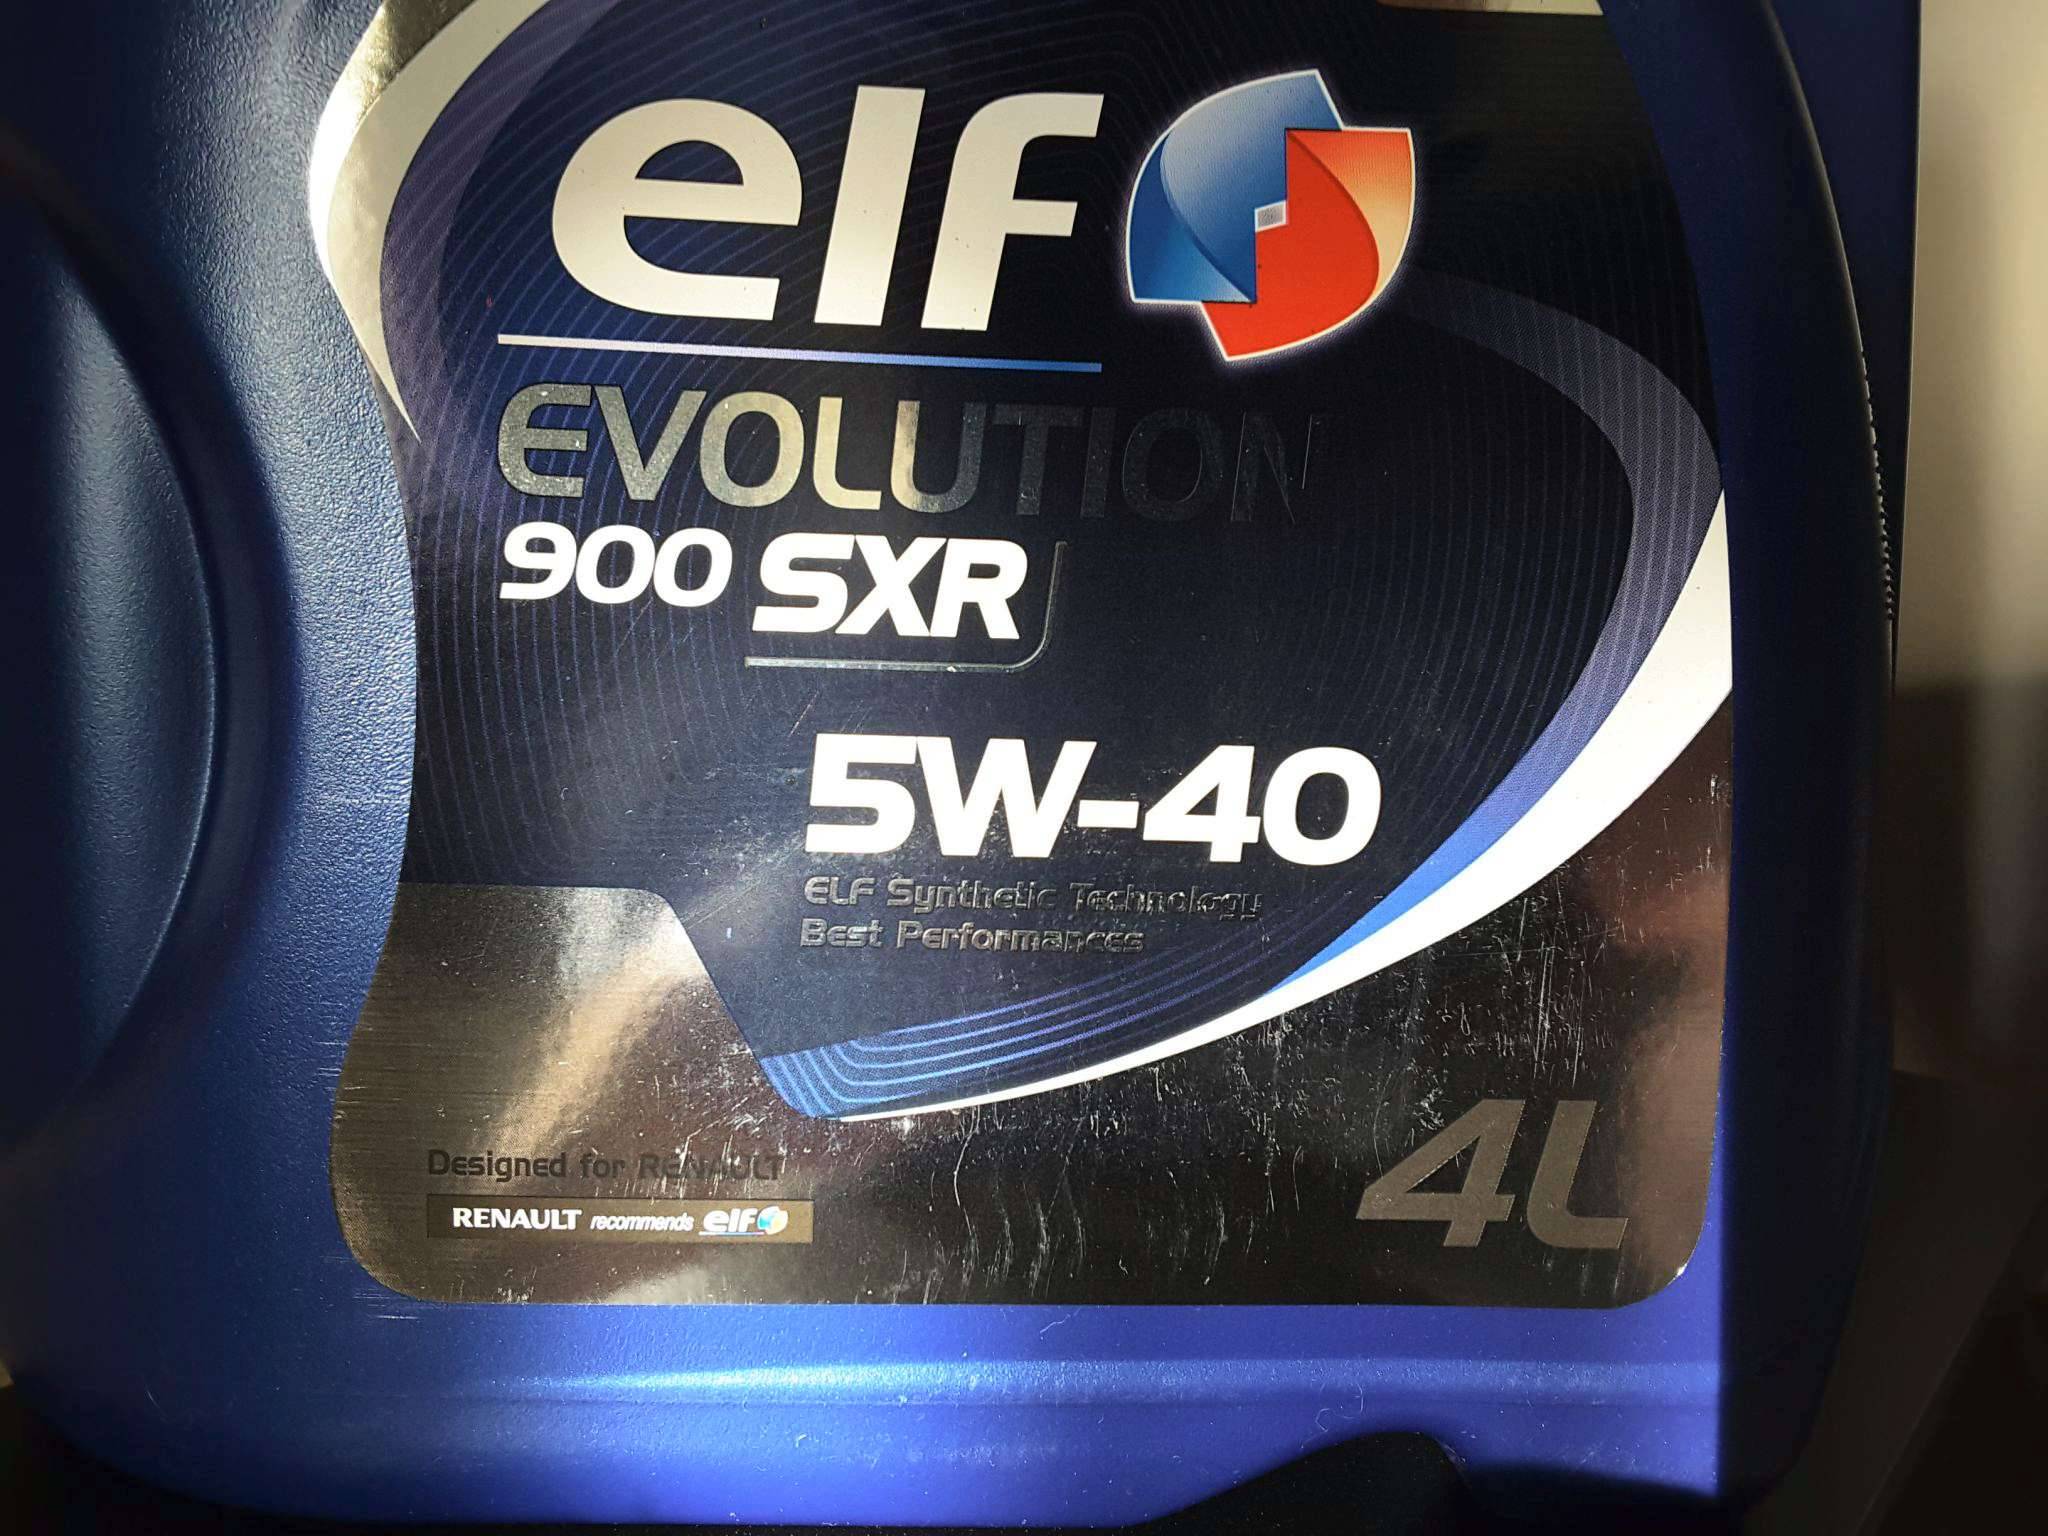 Масло elf evolution 900 sxr 5w-40: характеристики, видео, отзывы